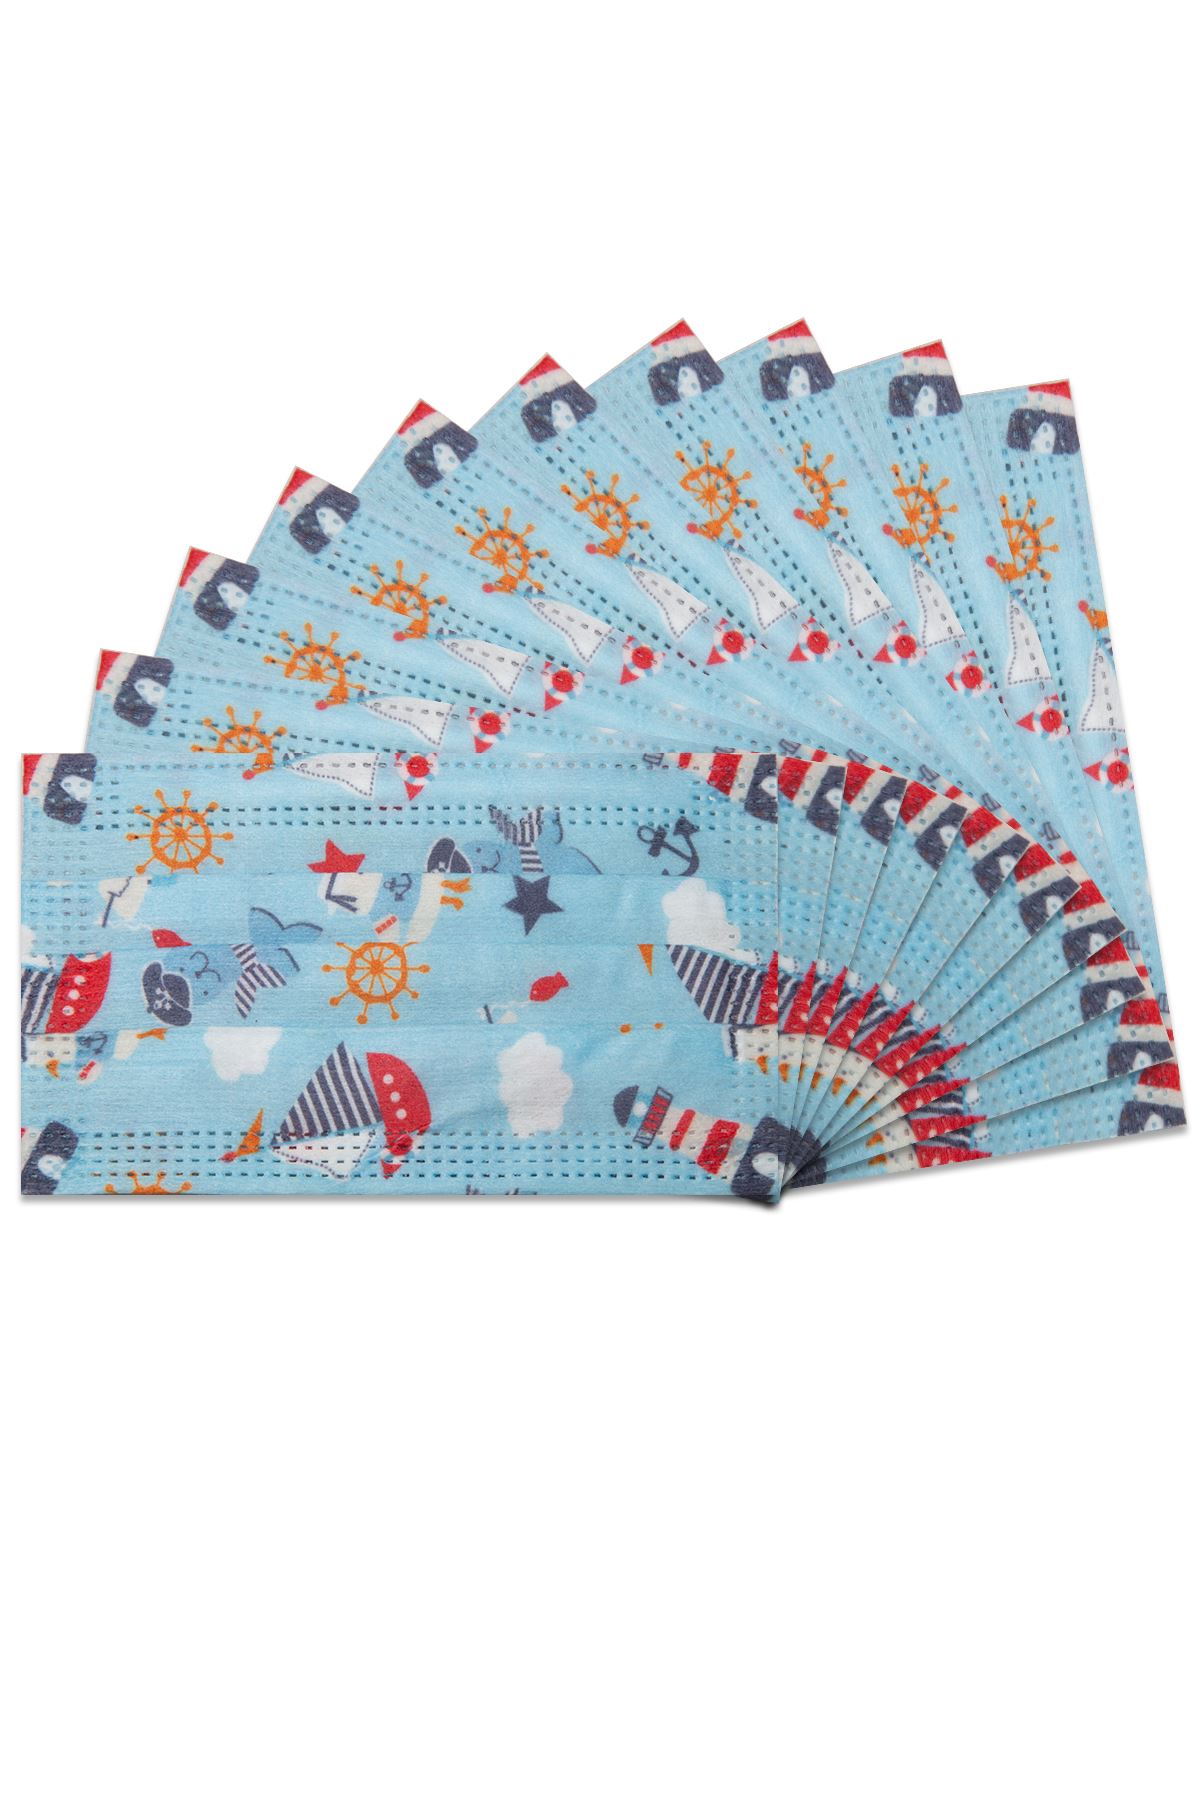 Wegwerpbaar elastisch medisch kindergezichtsmasker met blauw marien patroon 10-pack